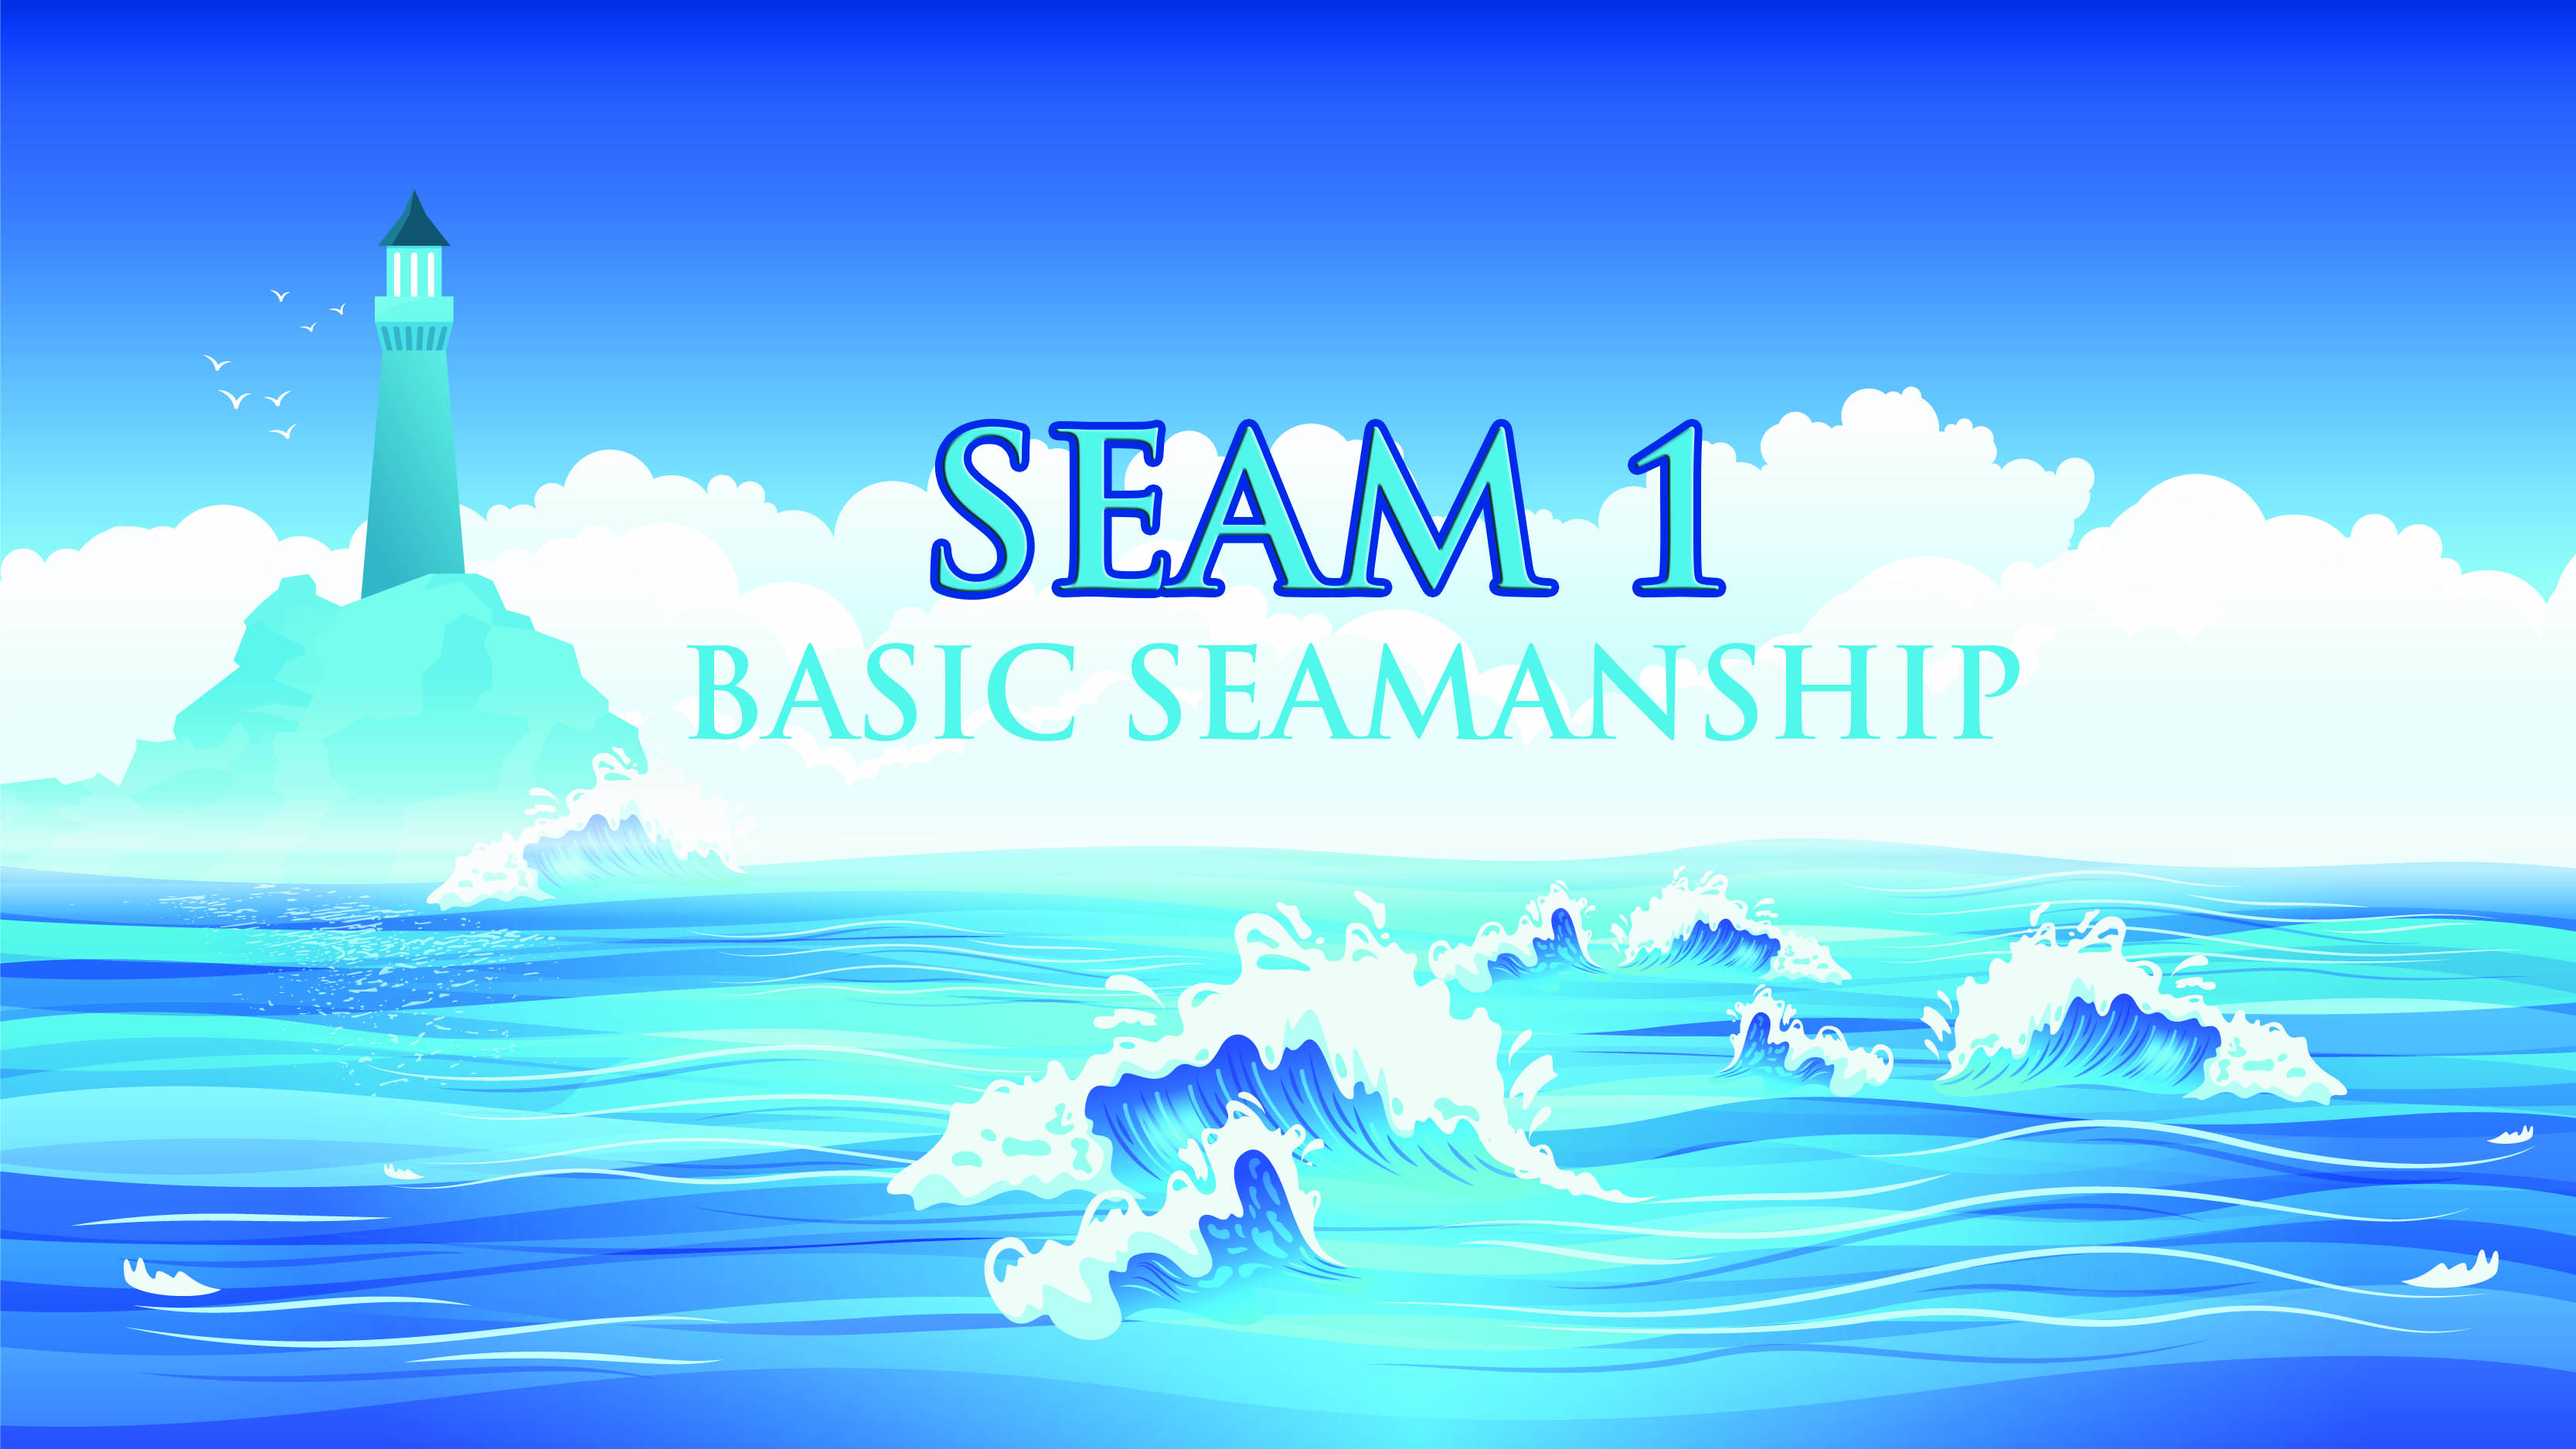 SEAM 1 – Basic Seamanship